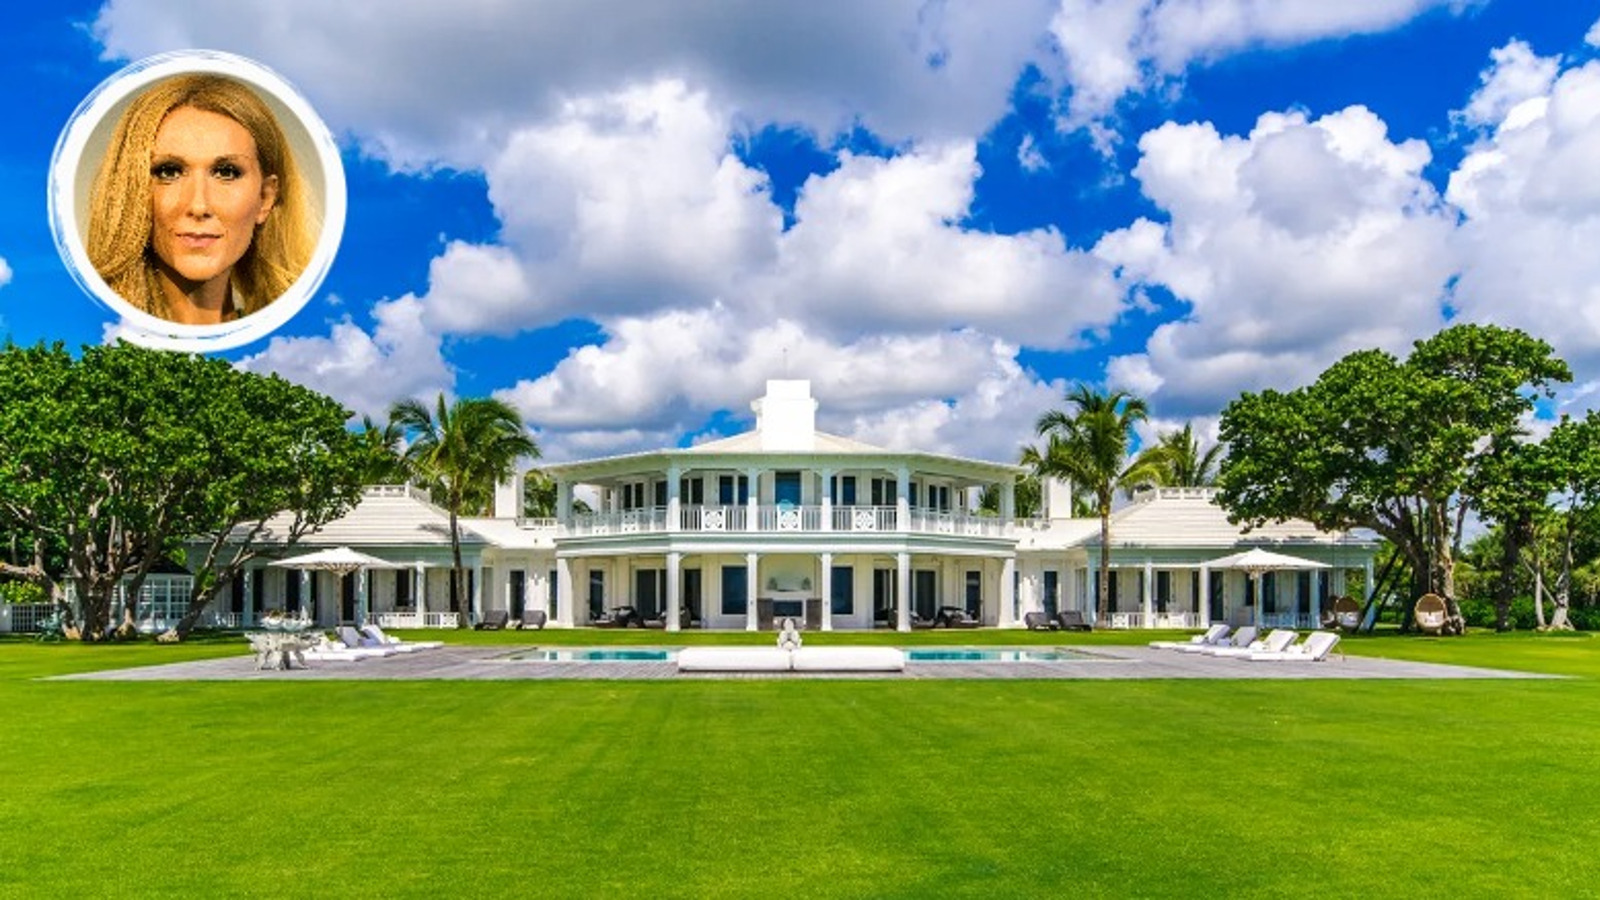 Celine Dion Home Inside The Florida Mansion Of Singer - vrogue.co